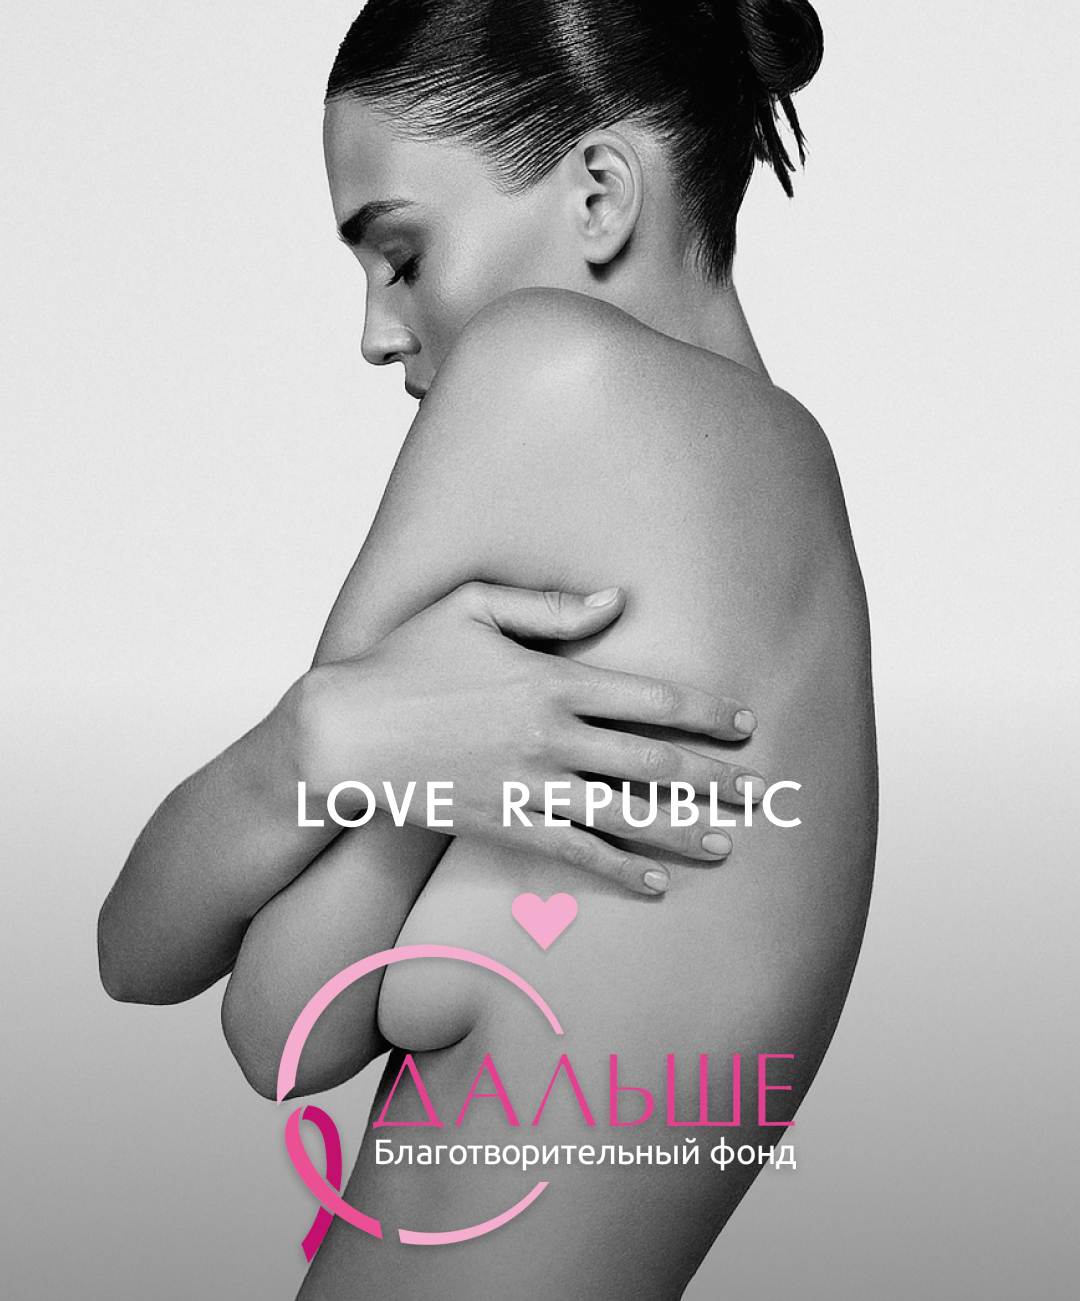 Love Republic запустил инициативу по повышению осведомленности о раке груди (фото 1)